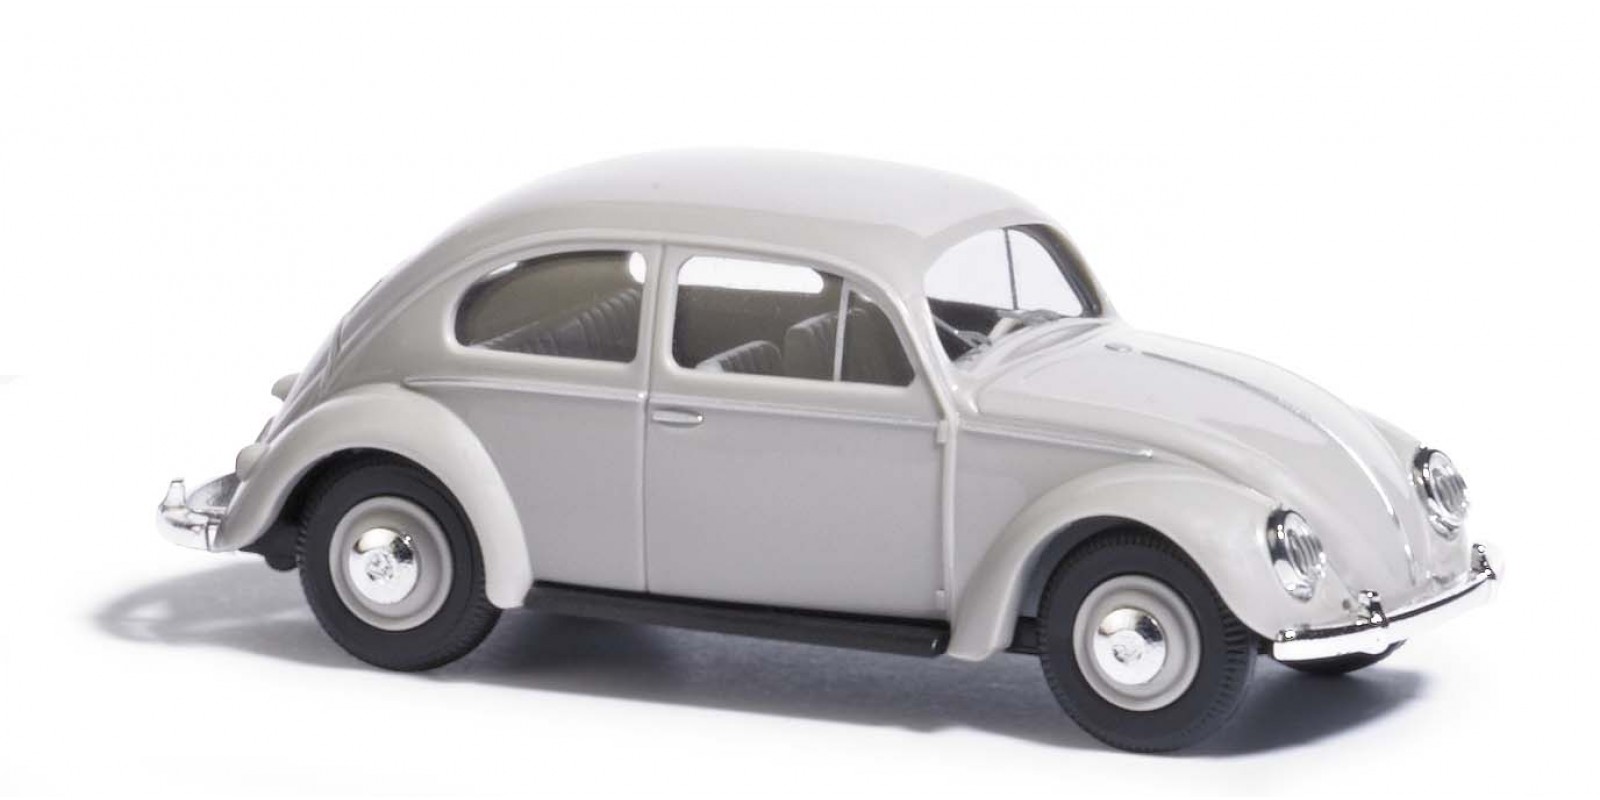 BU52951 VW Beetle with oval window, gray